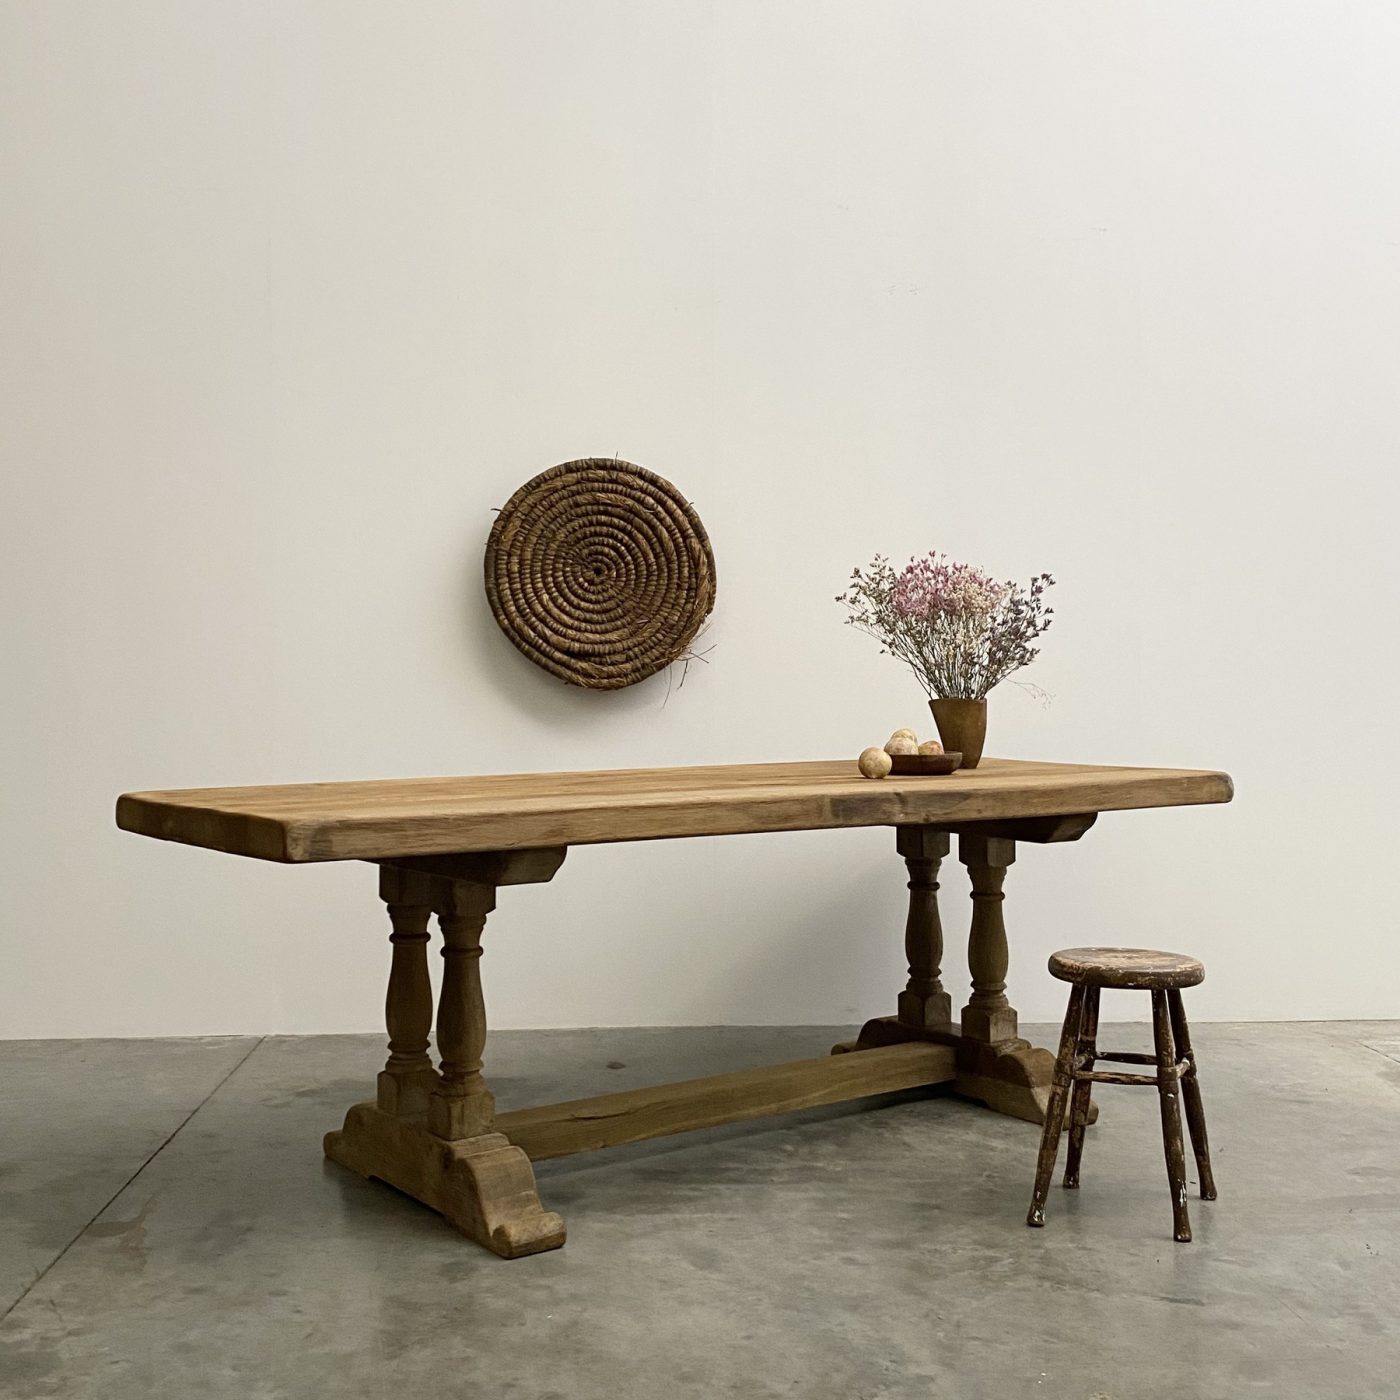 objet-vagabond-oak-table0001